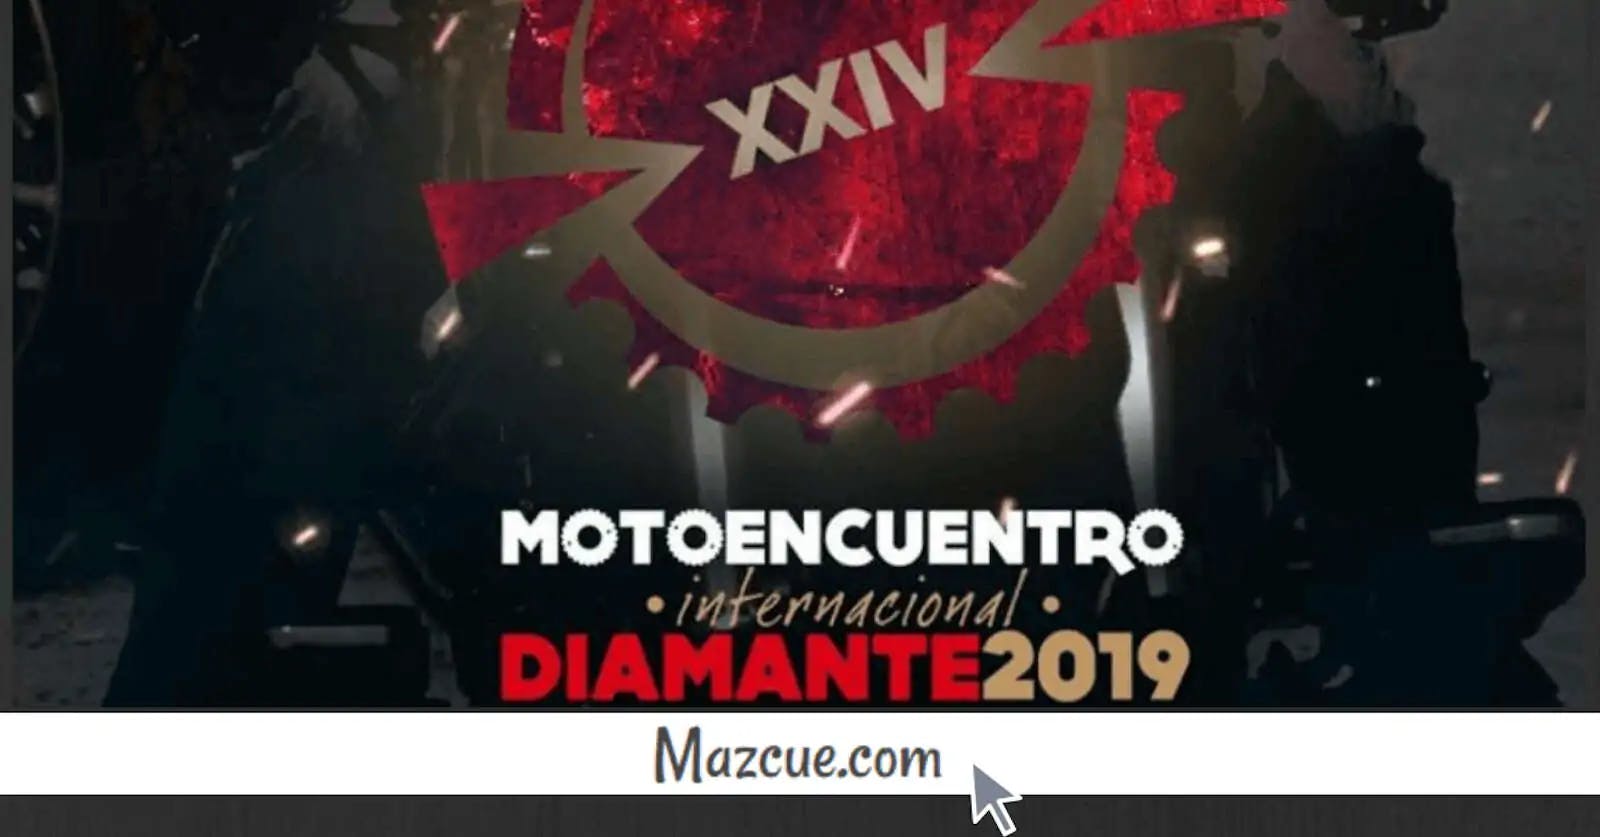 Motoencuentro Diamante 2019